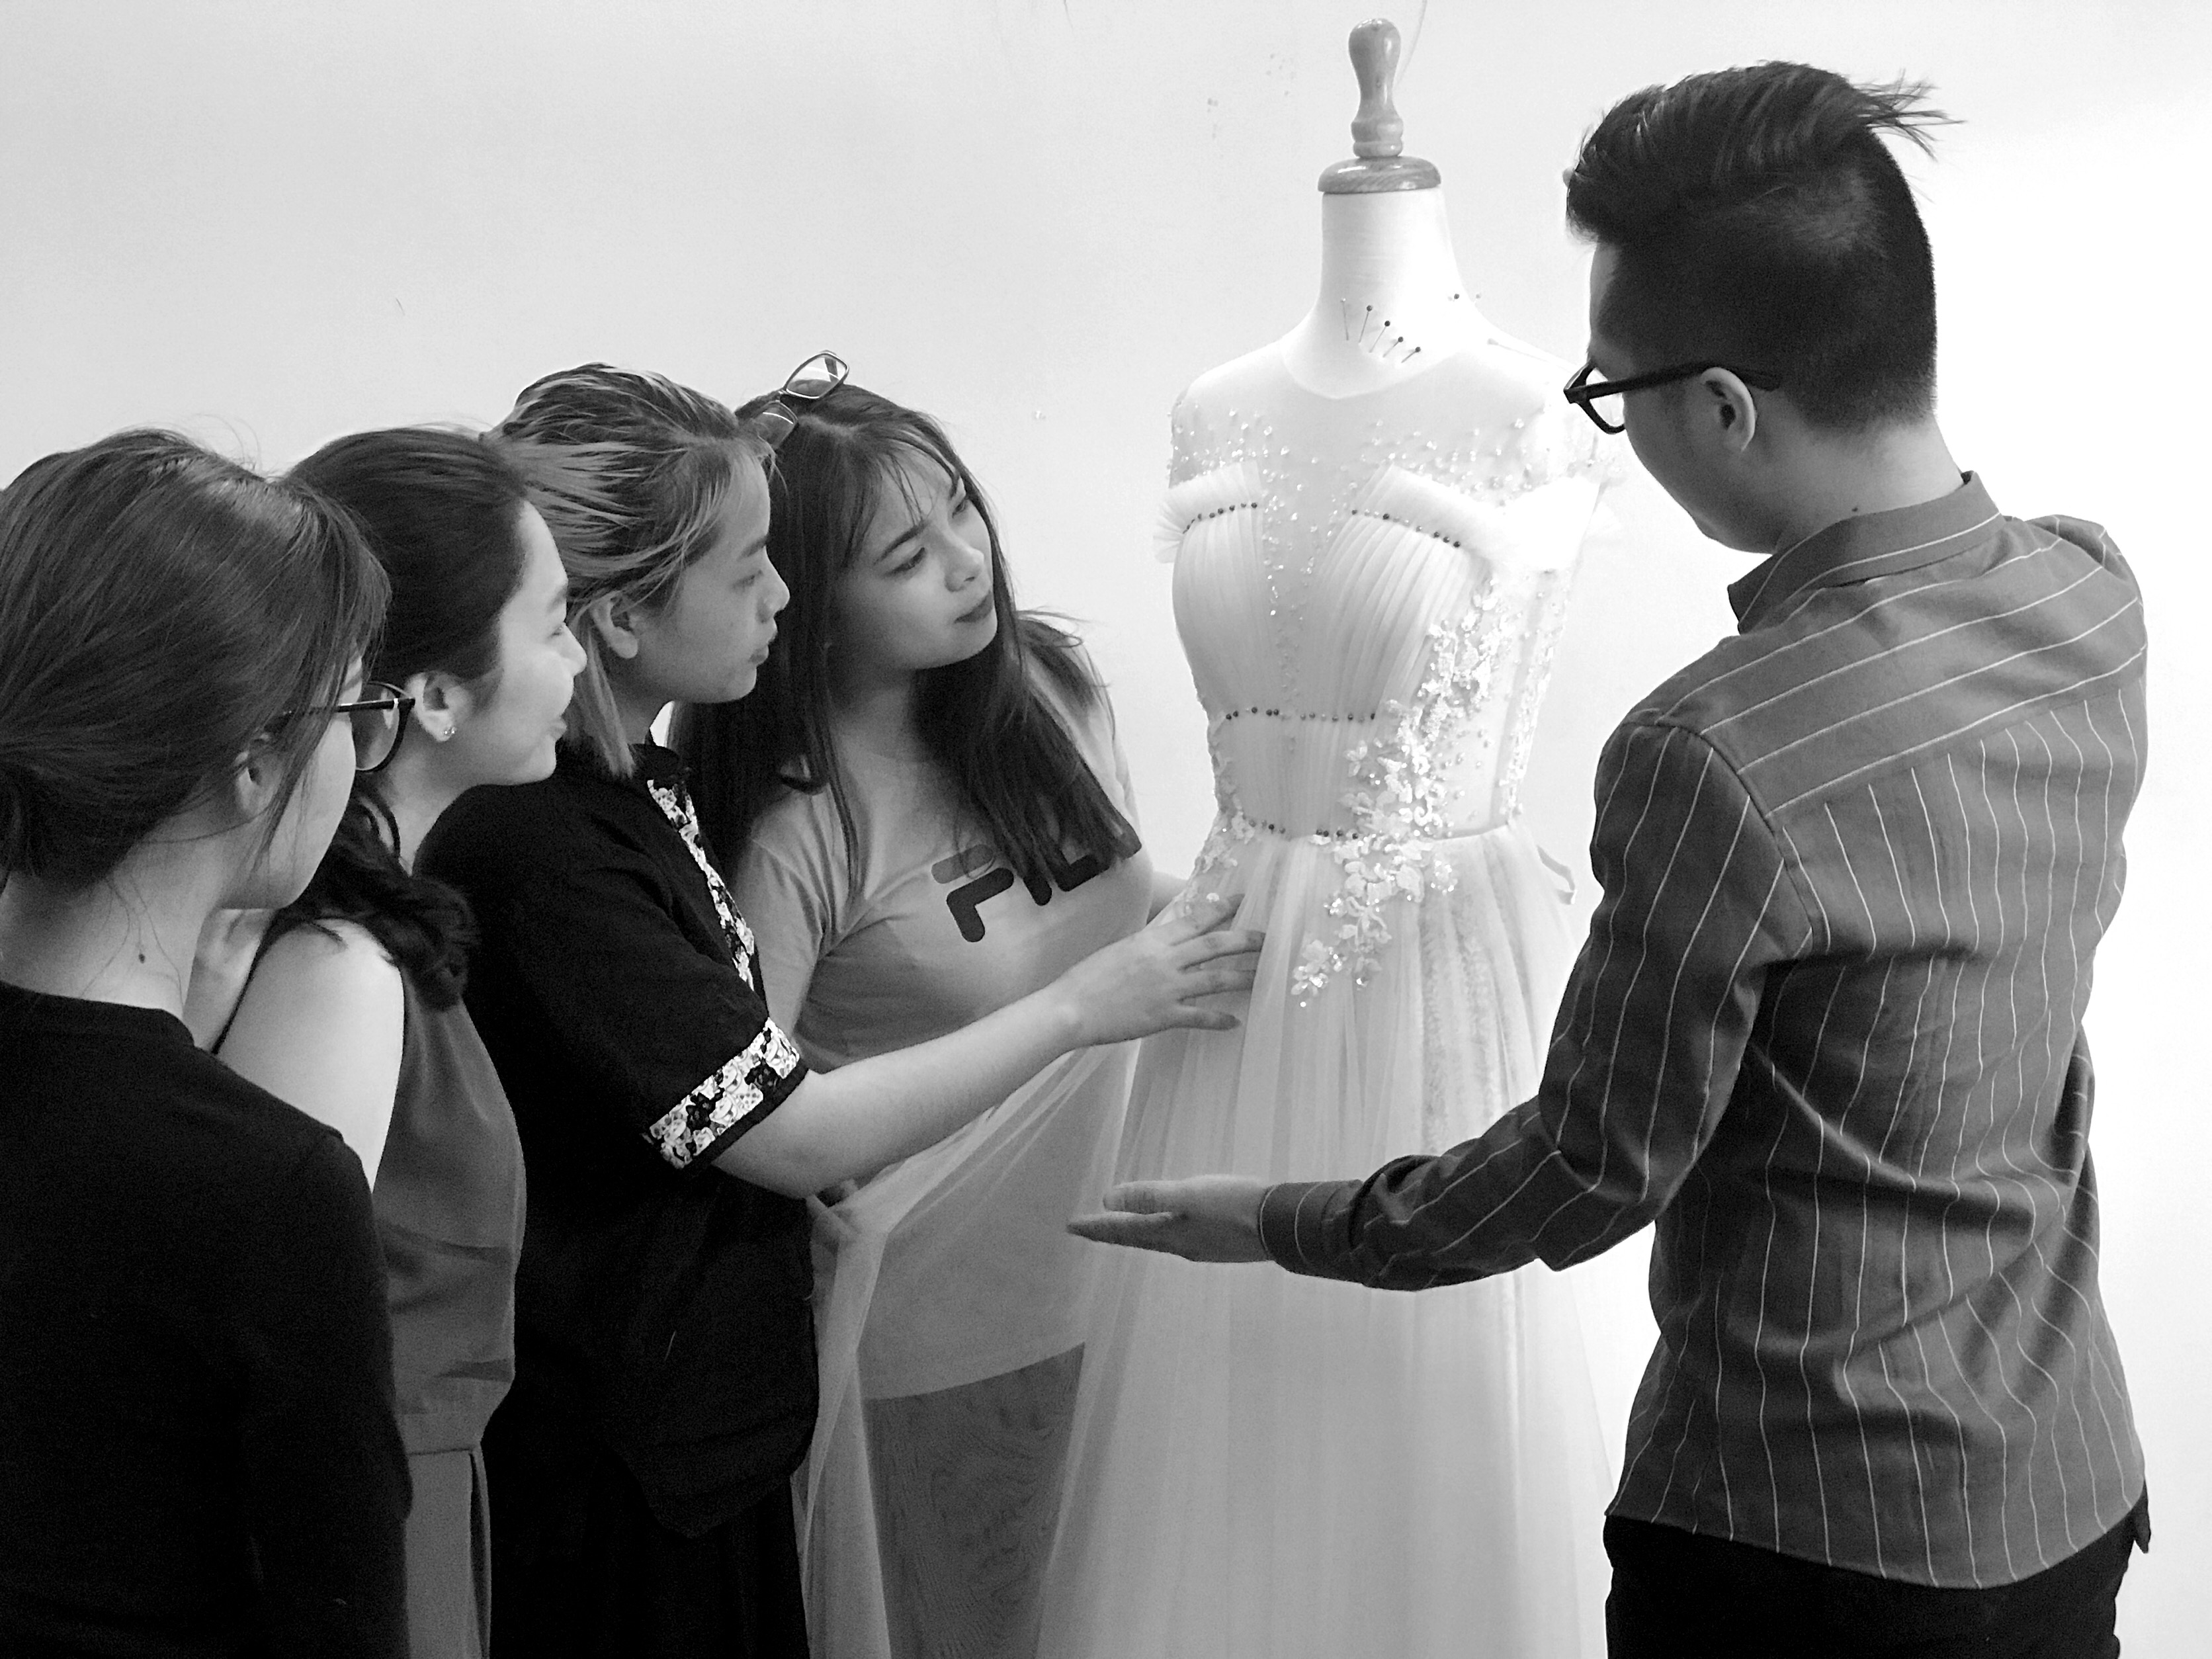 Nhà thiết kế Việt duy nhất tham gia Wedding Fashion show 2018 nói gì về chuyện nghề? 27